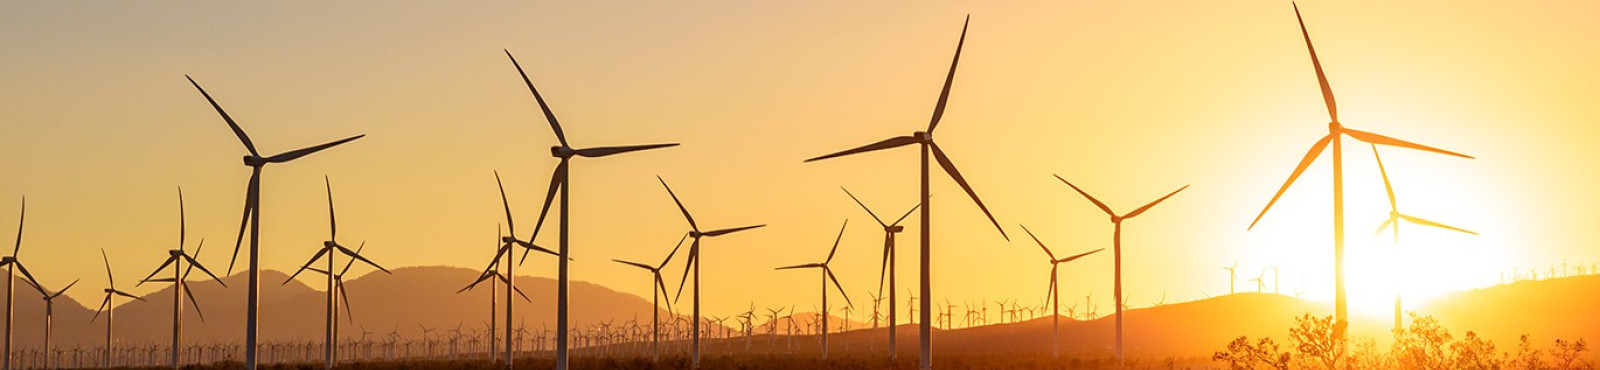 ESCO Announces Acquisition of Renewable Energy Industry Supplier